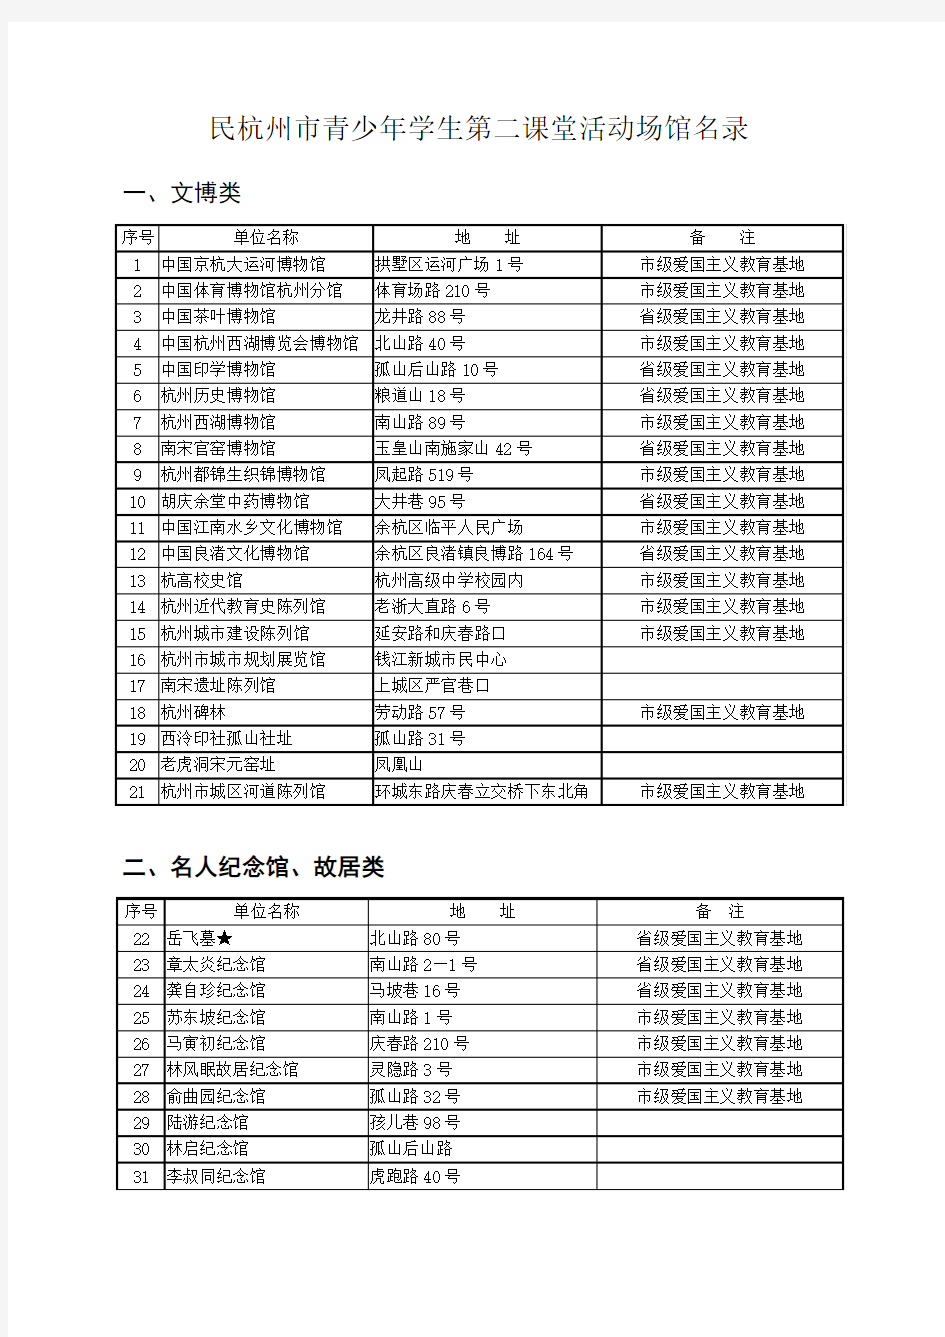 杭州市青少年学生第二课堂活动场馆名录